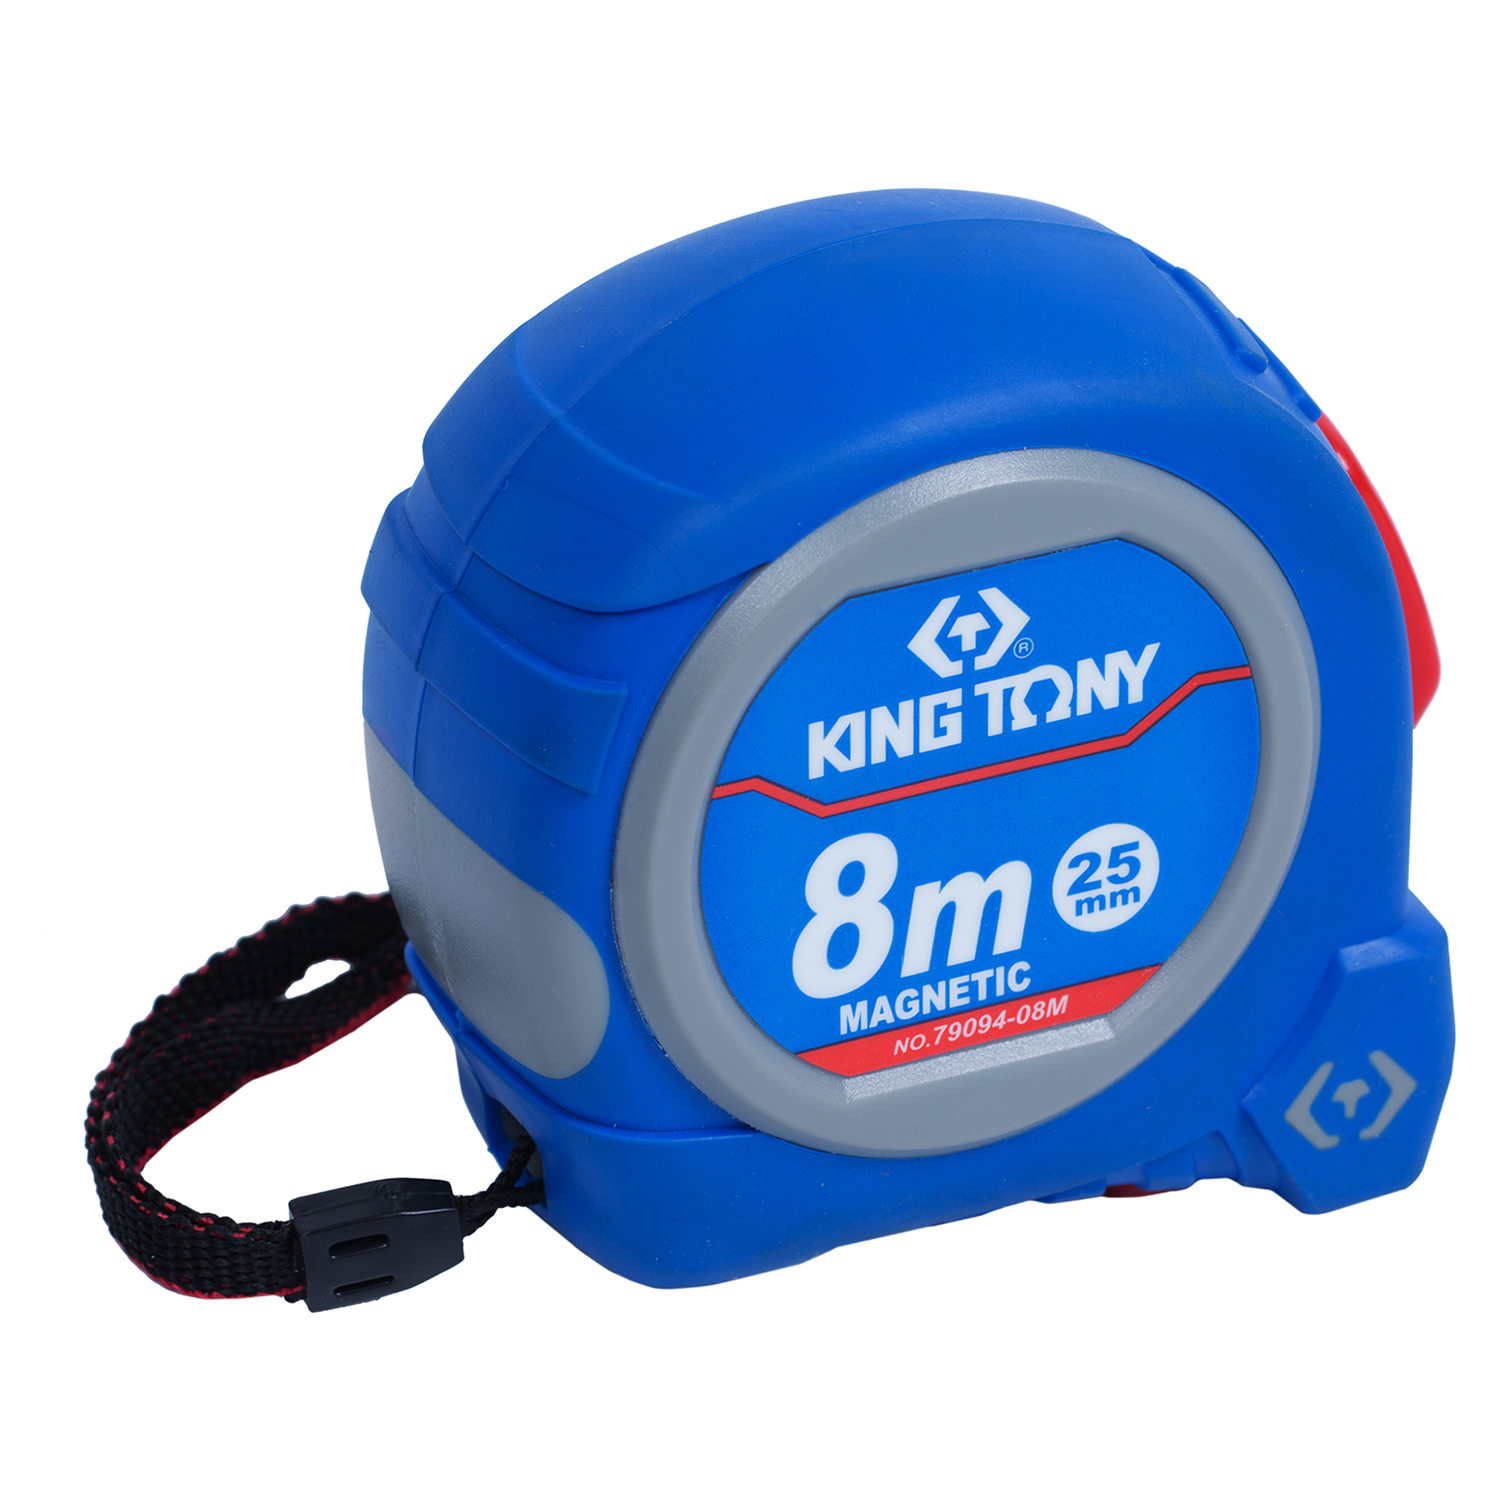 Рулетка магнитный крюк KING TONY 8 м 79094-08M